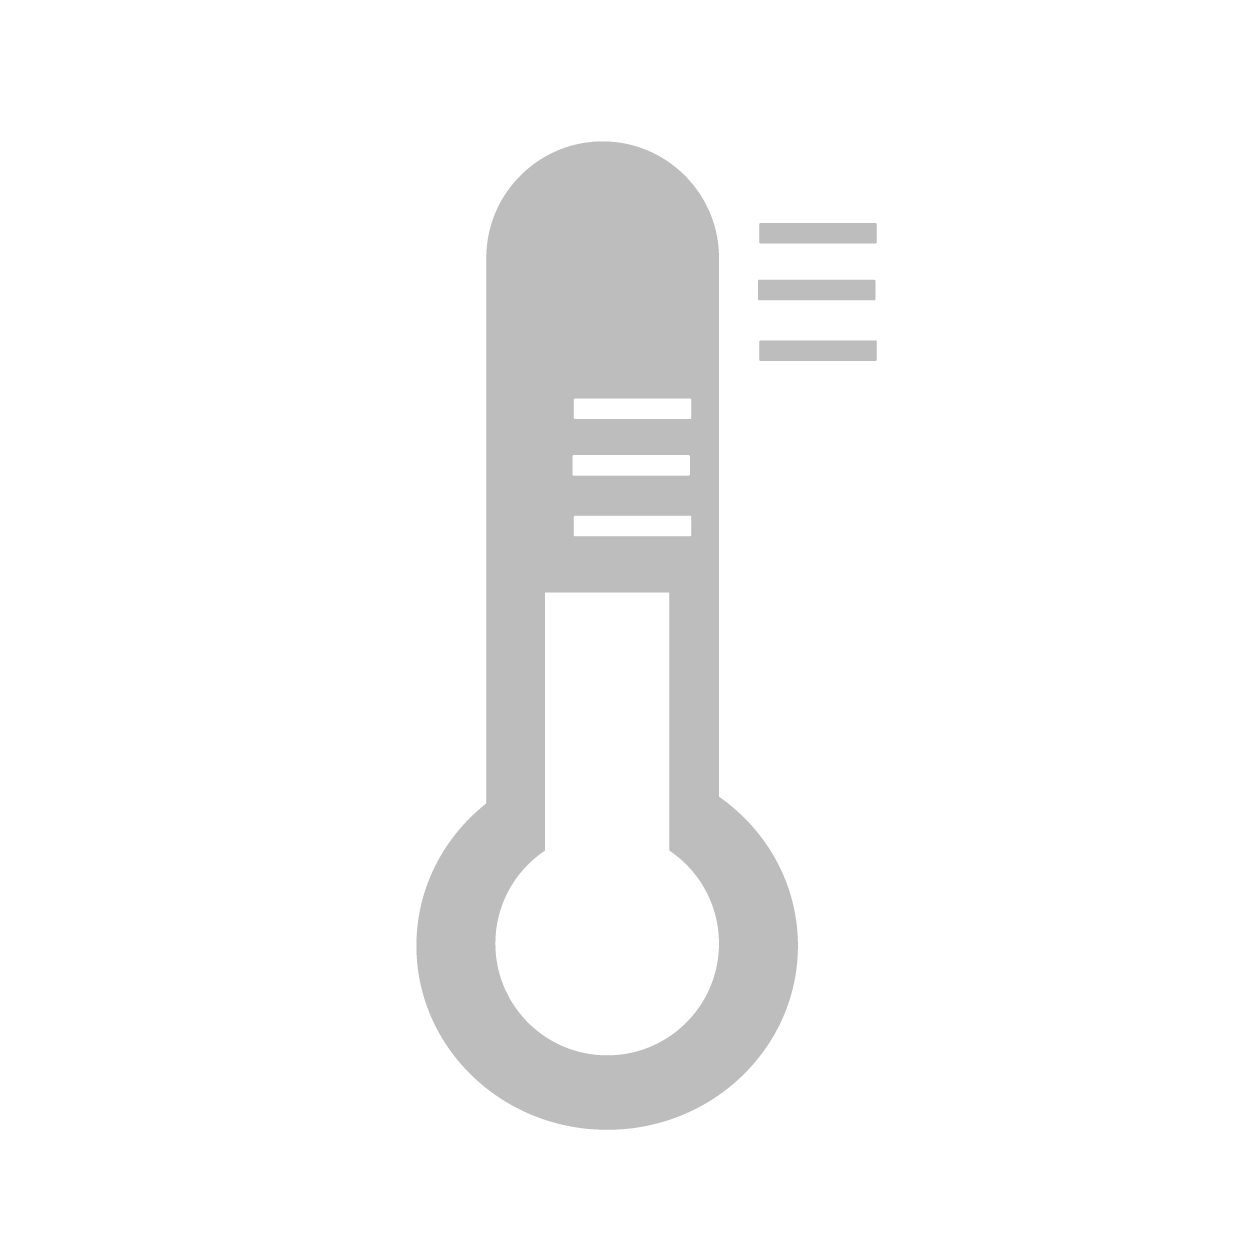 rfxcel branding temperature image